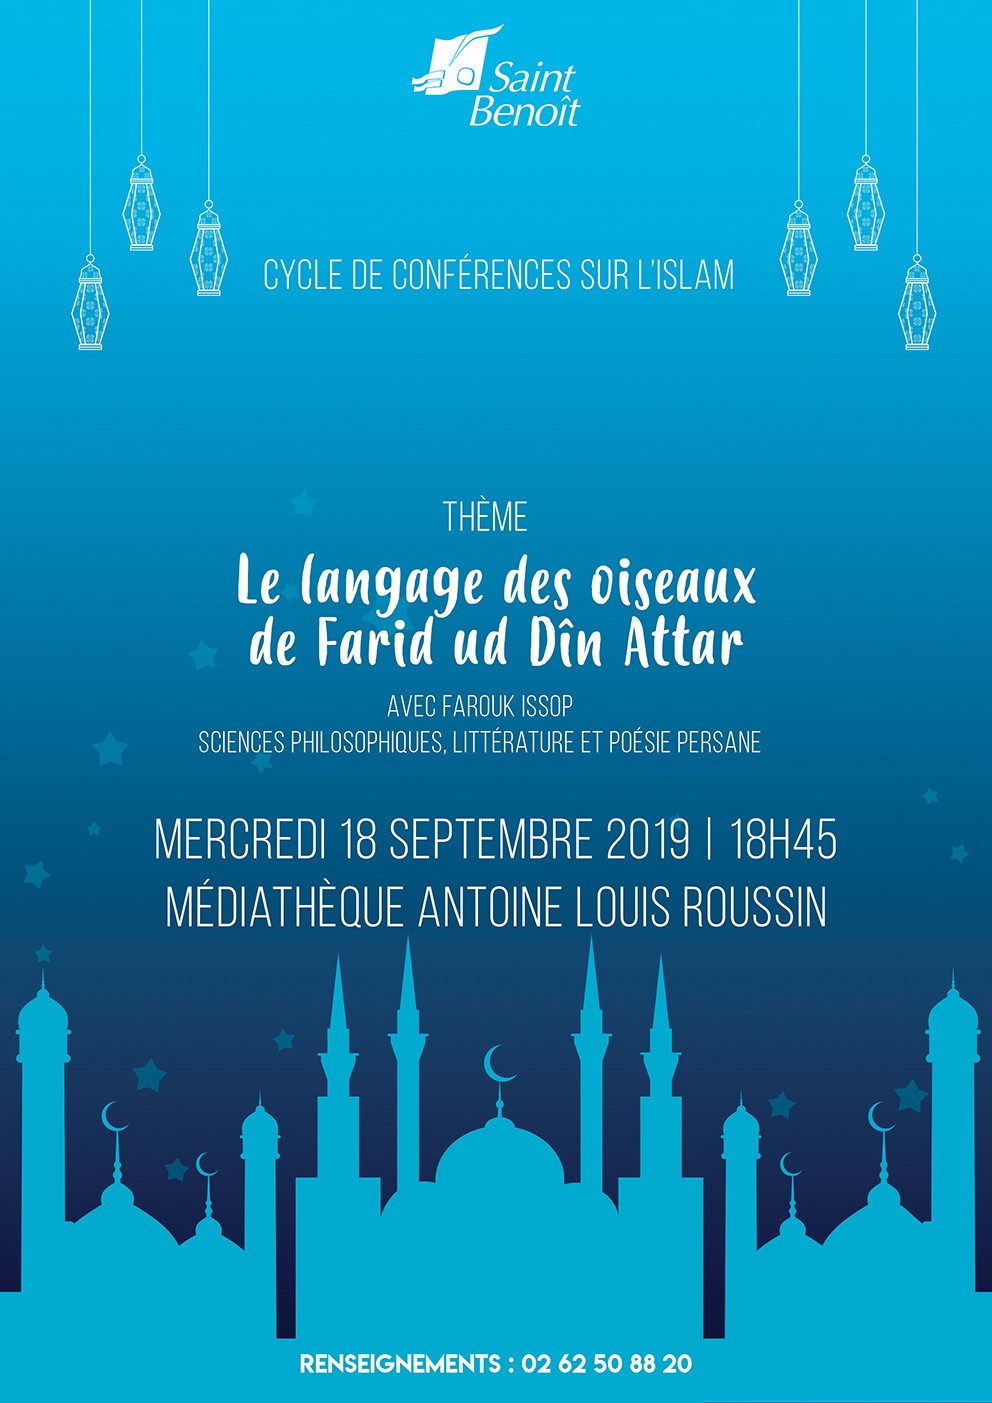 Conférence "Le langage des oiseaux de Farid ud Dîn Attar"